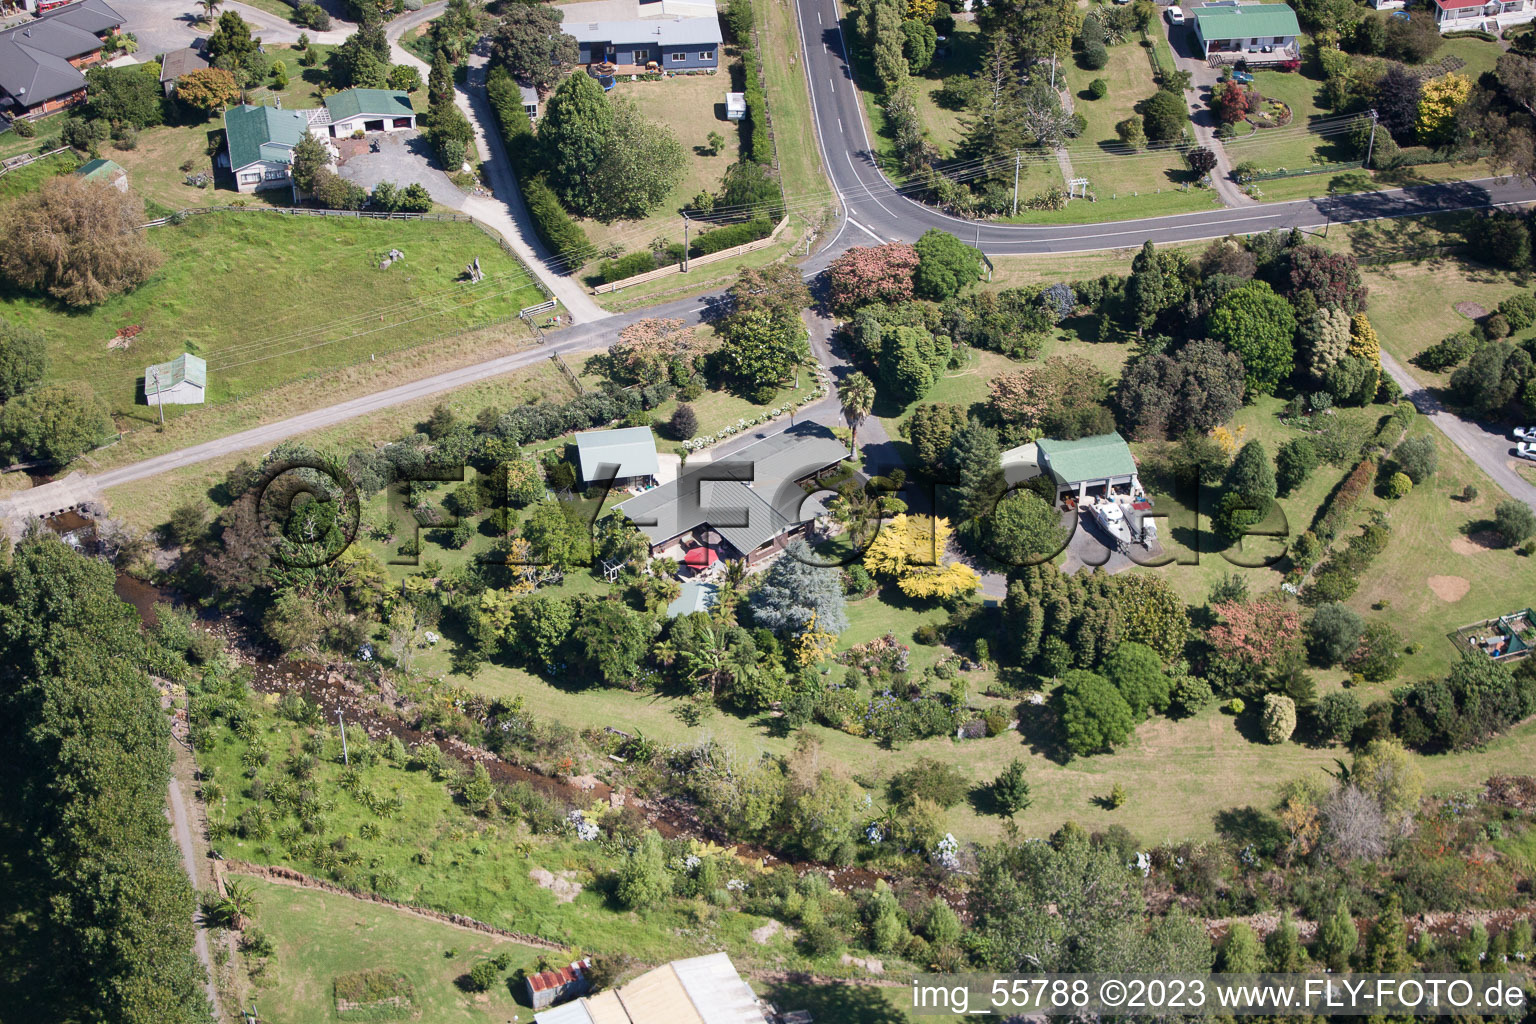 Coromandel im Bundesland Waikato, Neuseeland von oben gesehen